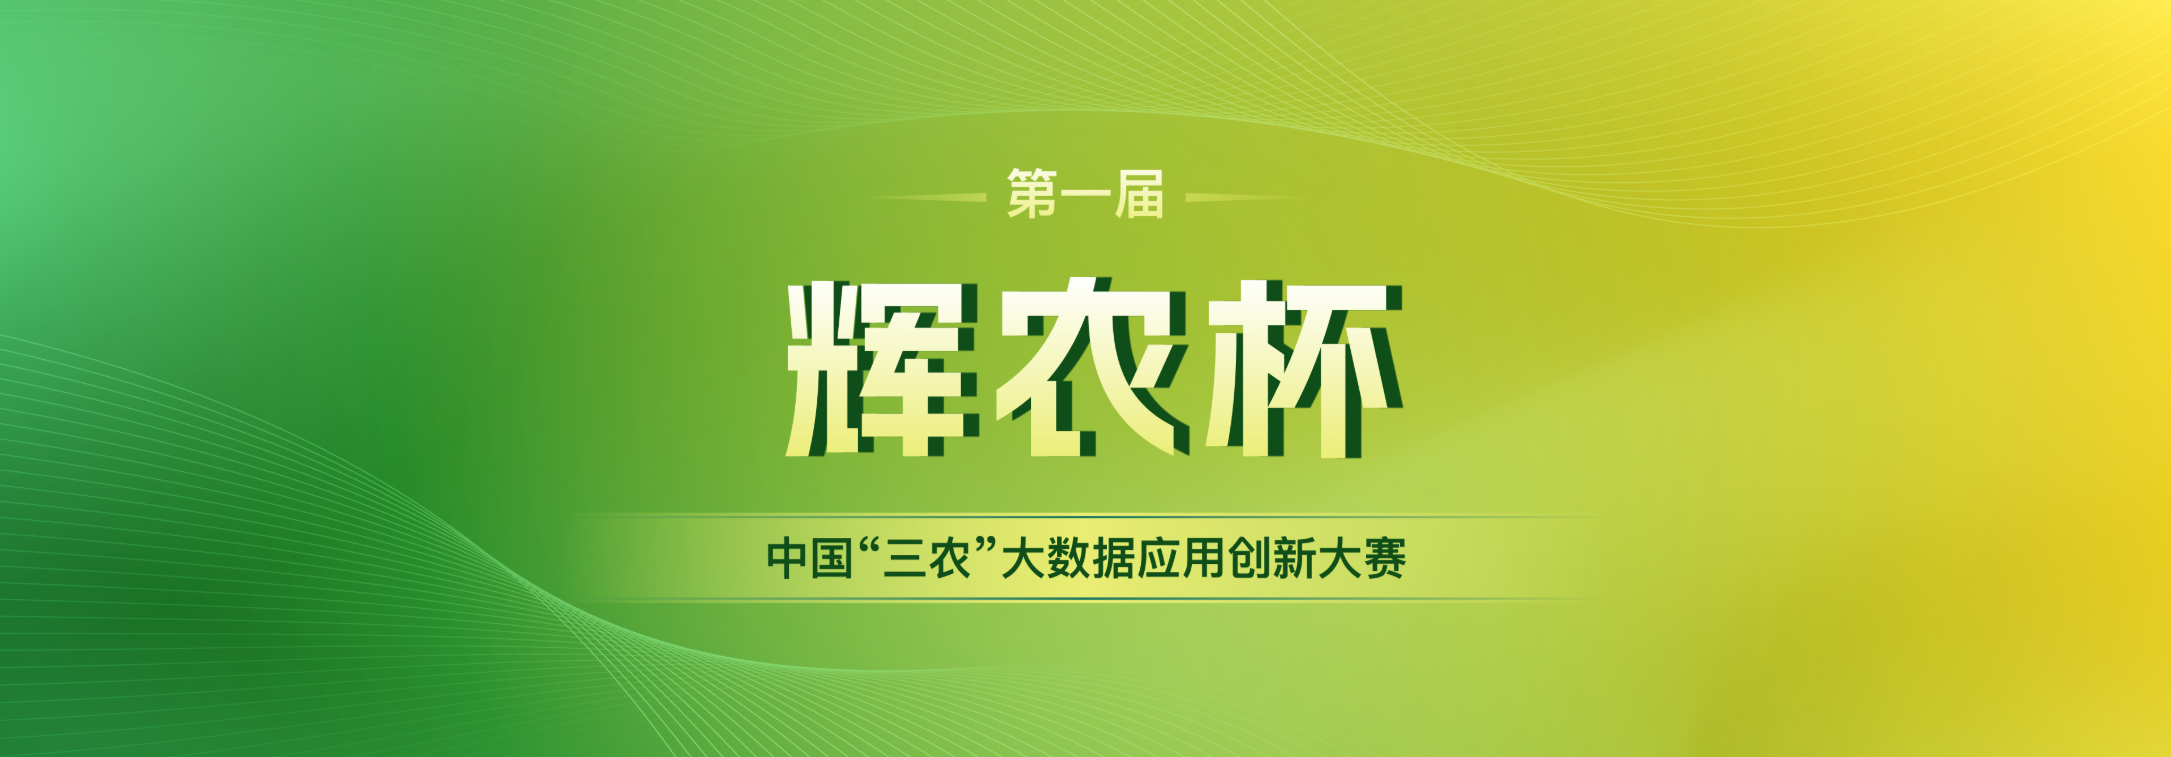 第一届“辉农杯”中国“三农” 大数据应用创新大赛通知